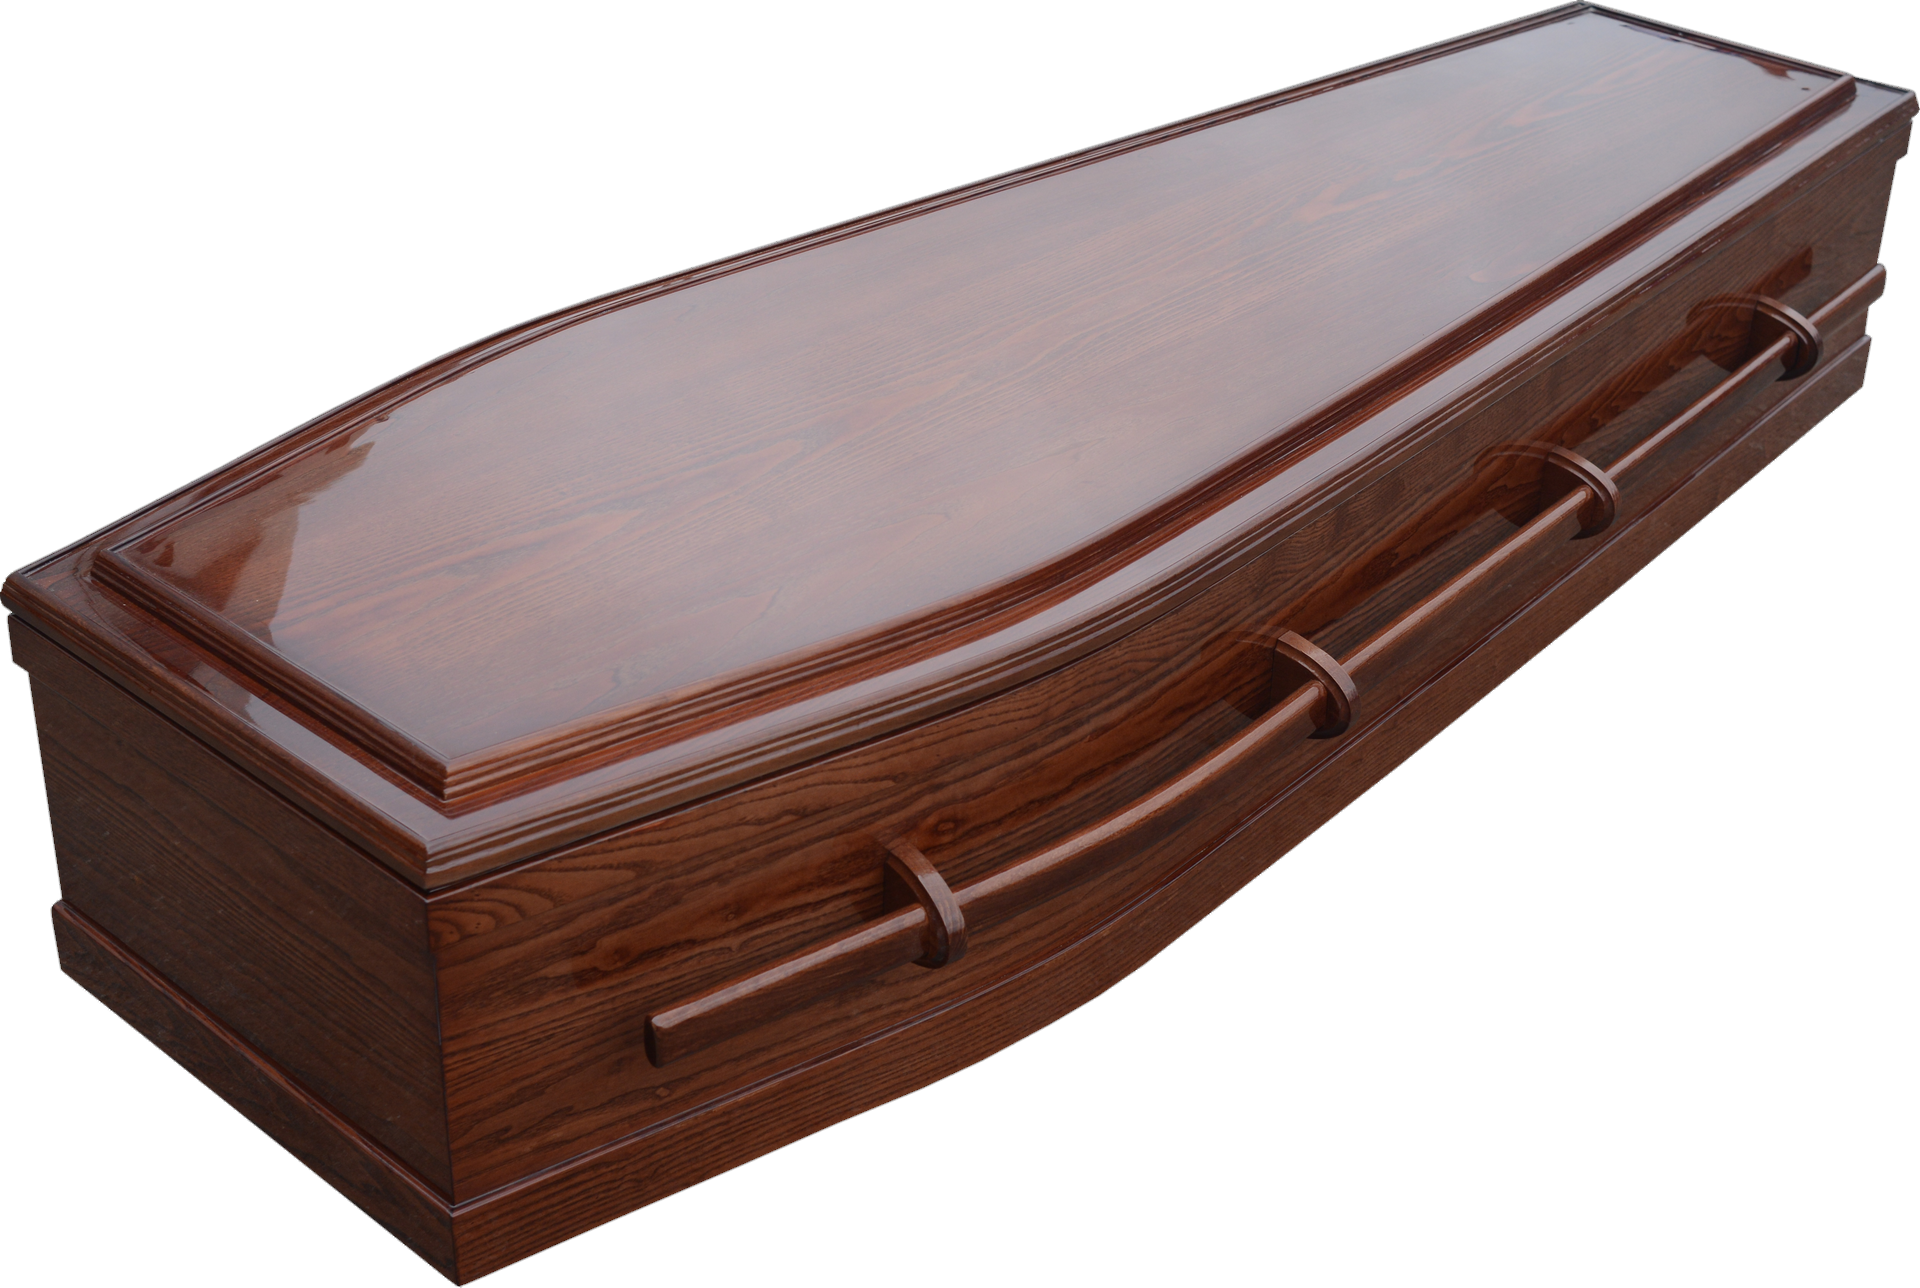 Coffin-9